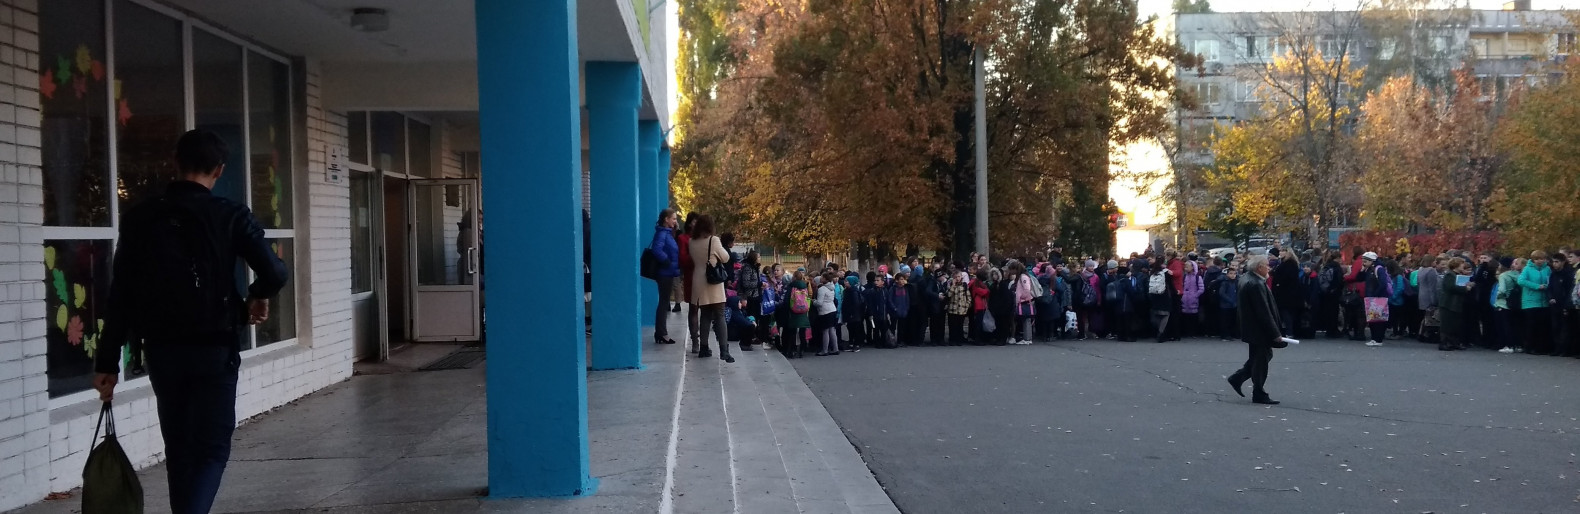 Павлоград: зі школи евакуювали більше тисячі дітей